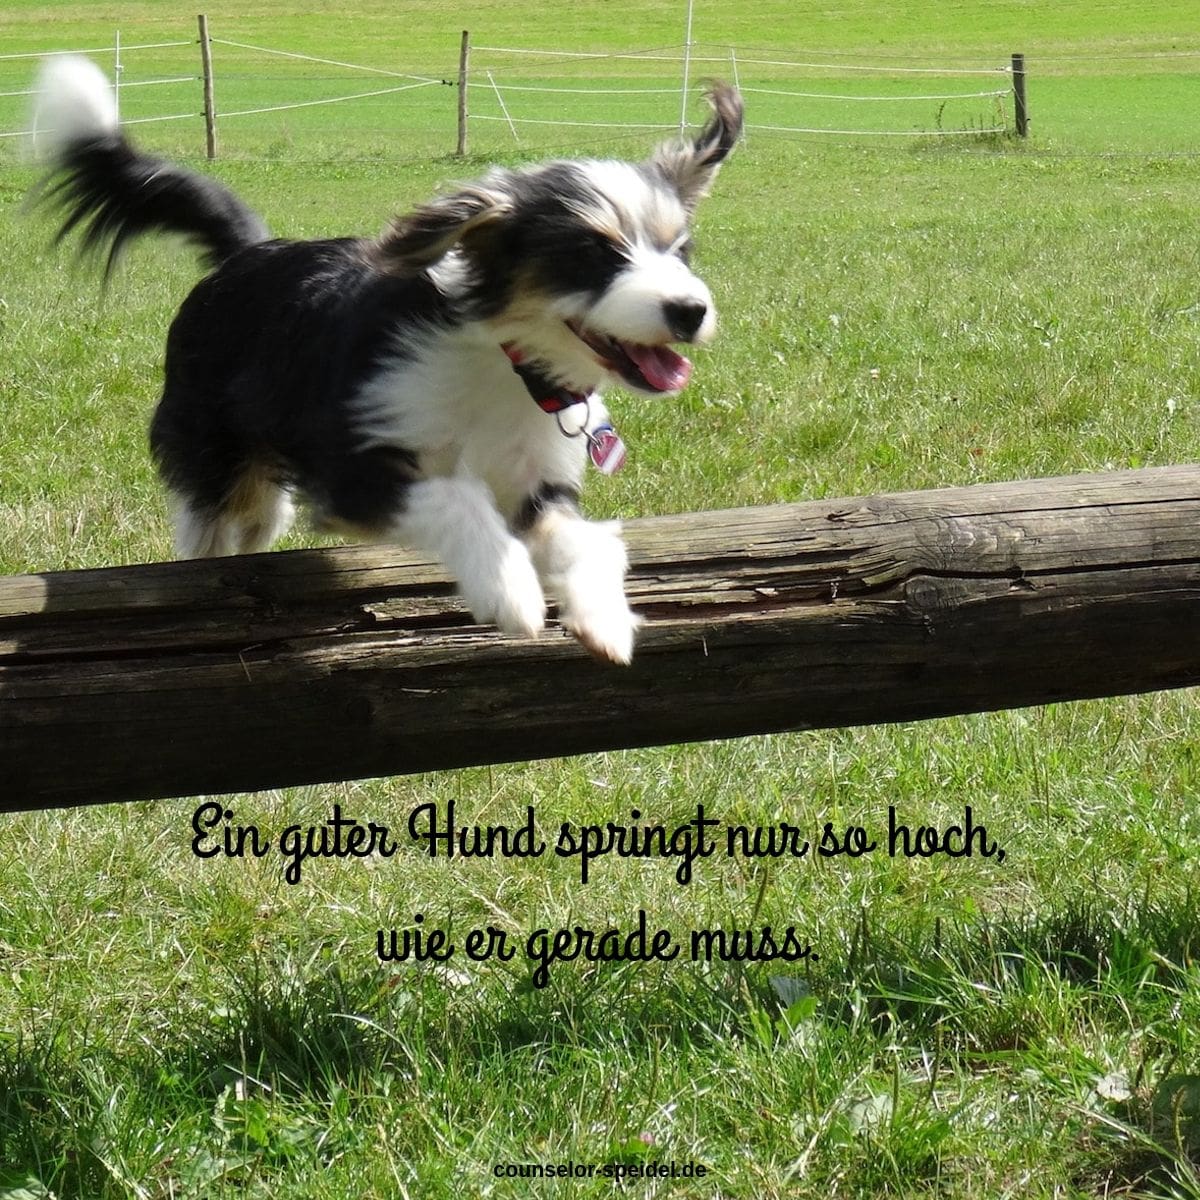 Ein guter Hund springt nur so hoch, wie er gerade muss.